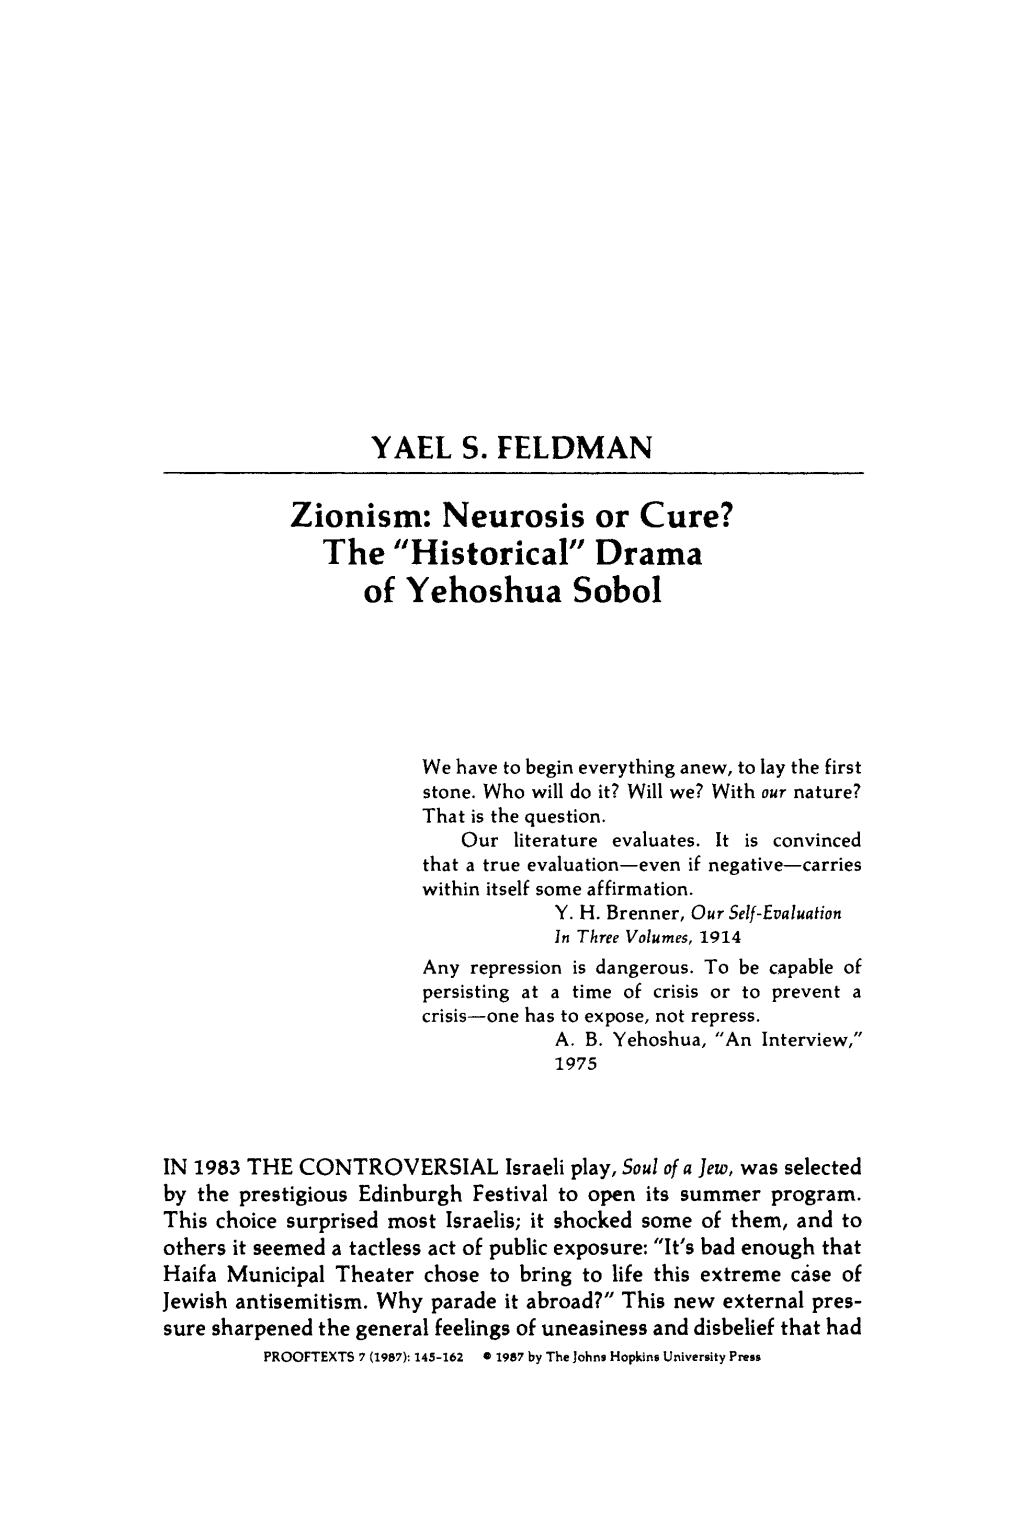 YAEL S. FELDMAN Zionism: Neurosis Or Cure? of Yehoshua Sobol